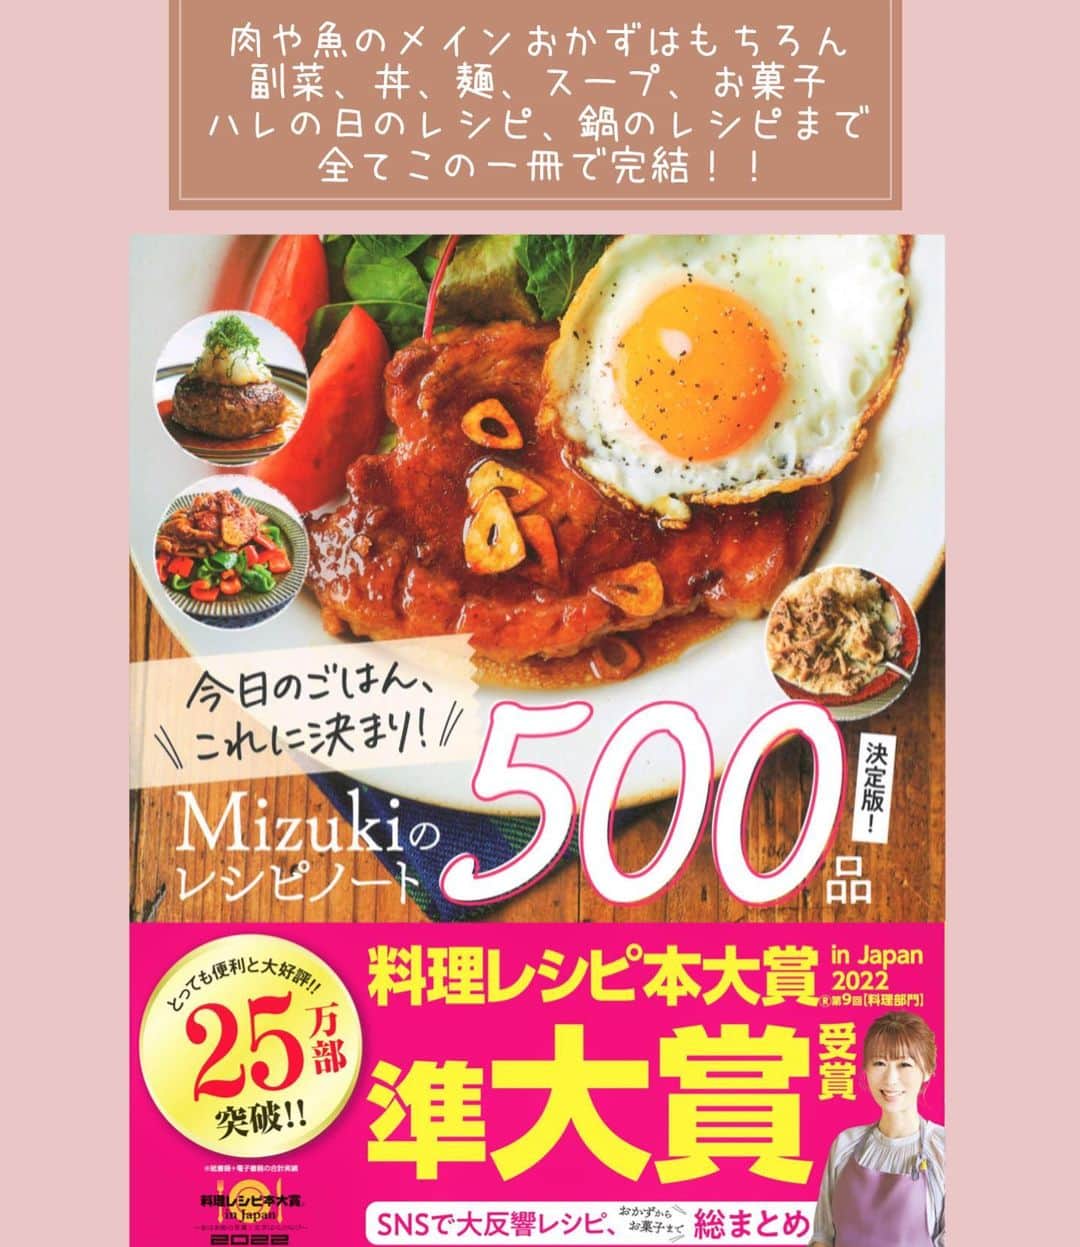 Mizuki【料理ブロガー・簡単レシピ】さんのインスタグラム写真 - (Mizuki【料理ブロガー・簡単レシピ】Instagram)「・おうちにある材料で💕 ⁡ ［#レシピ ］ ーーーーーーーーーーーーーーーー 練りごまなし！白菜の豆乳担々鍋 (お子さんも食べられます😋) ーーーーーーーーーーーーーーーー ⁡ ⁡ ⁡ おはようございます☺️ ⁡ 今日ご紹介させていただくのは \ 白菜の豆乳担々鍋 / (再掲載) ⁡ 練りごま要らずでお手軽‼️ ［豆乳×すりごま］で マイルドでクリーミーに仕上げました💕 スープ自体は辛くないので お子さんも一緒に食べられますよ〜♩ (大人は取り分け後にラー油をかけて✨) ⁡ 特別な材料なしでできるので お気軽にお試しくださいね🥰 〆はラーメンがおすすめです♩ ⁡ ⁡ ⁡ ⋱⋰ ⋱⋰ ⋱⋰ ⋱⋰ ⋱⋰ ⋱⋰ ⋱⋰ 📍簡単・時短・節約レシピ更新中  Threadsもこちらから▼ @mizuki_31cafe ⁡ 📍謎の暮らし＆変なライブ垢 @mizuki_kurashi ⋱⋰ ⋱⋰ ⋱⋰ ⋱⋰ ⋱⋰ ⋱⋰ ⋱⋰ ⁡ ⁡ ⁡ ＿＿＿＿＿＿＿＿＿＿＿＿＿＿＿＿＿＿＿ 【2人分】 豚ひき肉...200g 長ねぎ...1/3本 白菜...1/6個(350g) 豆腐...1/2丁 ごま油...大1/2 ●オイスターソース...大1 ●(好みで)豆板醤...小1/2 ☆水...300ml ☆鶏がらスープ・味噌...各大1 豆乳(無調整)...200ml すりごま...大3 (好みで)ラー油...適量 ⁡ 1.長ねぎはみじん切りにする。白菜の芯は1cm幅、葉はざく切りにする。豆腐は食べやすい大きさに切る。 2.鍋にごま油を中火で熱し、ひき肉と長ねぎを炒める。火が通ったら●を加えて煮からめ、一旦取り出しておく。 3.そのままの鍋に☆を入れて煮立て、白菜と豆腐を加え、蓋をして5分煮る。 4.豆乳とすりごまを加えて温め(沸騰しない火加減で)、中央に2をのせる。仕上げにラー油をかける。 ￣￣￣￣￣￣￣￣￣￣￣￣￣￣￣￣￣￣￣ ⁡ ⁡ 《ポイント》 ♦︎仕上げのラー油無しなら辛くないのでお子さんも食べられます♩大人は取り分けてからラー油をかければOK！ ♦︎豆乳は沸騰させると分離するので、火加減に気をつけて下さい☆(個人的には多少分離しても気になりませんが😳) ♦︎白菜の代わりにキャベツで作ったり、きのこやニラなどを加えても◎豆腐は絹でも木綿でも厚揚げでも◎ ⁡ ⁡ ⁡ ⁡ ⁡ ⋱⋰ ⋱⋰ ⋱⋰ ⋱⋰ ⋱⋰ ⋱⋰ ⋱⋰  愛用している調理器具・器など   #楽天ROOMに載せてます ‎𐩢𐩺  (ハイライトから飛べます🕊️) ⋱⋰ ⋱⋰ ⋱⋰ ⋱⋰ ⋱⋰ ⋱⋰ ⋱⋰ ⁡ ⁡ ⁡ ⁡ ⁡ ✼••┈┈┈┈┈••✼••┈┈┈┈┈••✼ 今日のごはんこれに決まり！ ‎𓊆#Mizukiのレシピノート 500品𓊇 ✼••┈┈┈┈┈••✼••┈┈┈┈┈••✼ ⁡ ˗ˏˋ おかげさまで25万部突破 ˎˊ˗ 料理レシピ本大賞準大賞を受賞しました✨ ⁡ 6000点の中からレシピを厳選し まさかの【500レシピ掲載】 肉や魚のメインおかずはもちろん 副菜、丼、麺、スープ、お菓子 ハレの日のレシピ、鍋のレシピまで 全てこの一冊で完結 𓌉◯𓇋 (全国の書店・ネット書店で発売中) ⁡ ⁡ ⁡ ⁡ ⁡ ⁡ #担々鍋 #白菜レシピ #鍋 #鍋料理 #ひき肉レシピ #豆腐レシピ #担々麺 #節約料理  #簡単料理  #時短料理 #mizukiレシピ  #時短レシピ #節約レシピ #簡単レシピ」11月4日 7時14分 - mizuki_31cafe